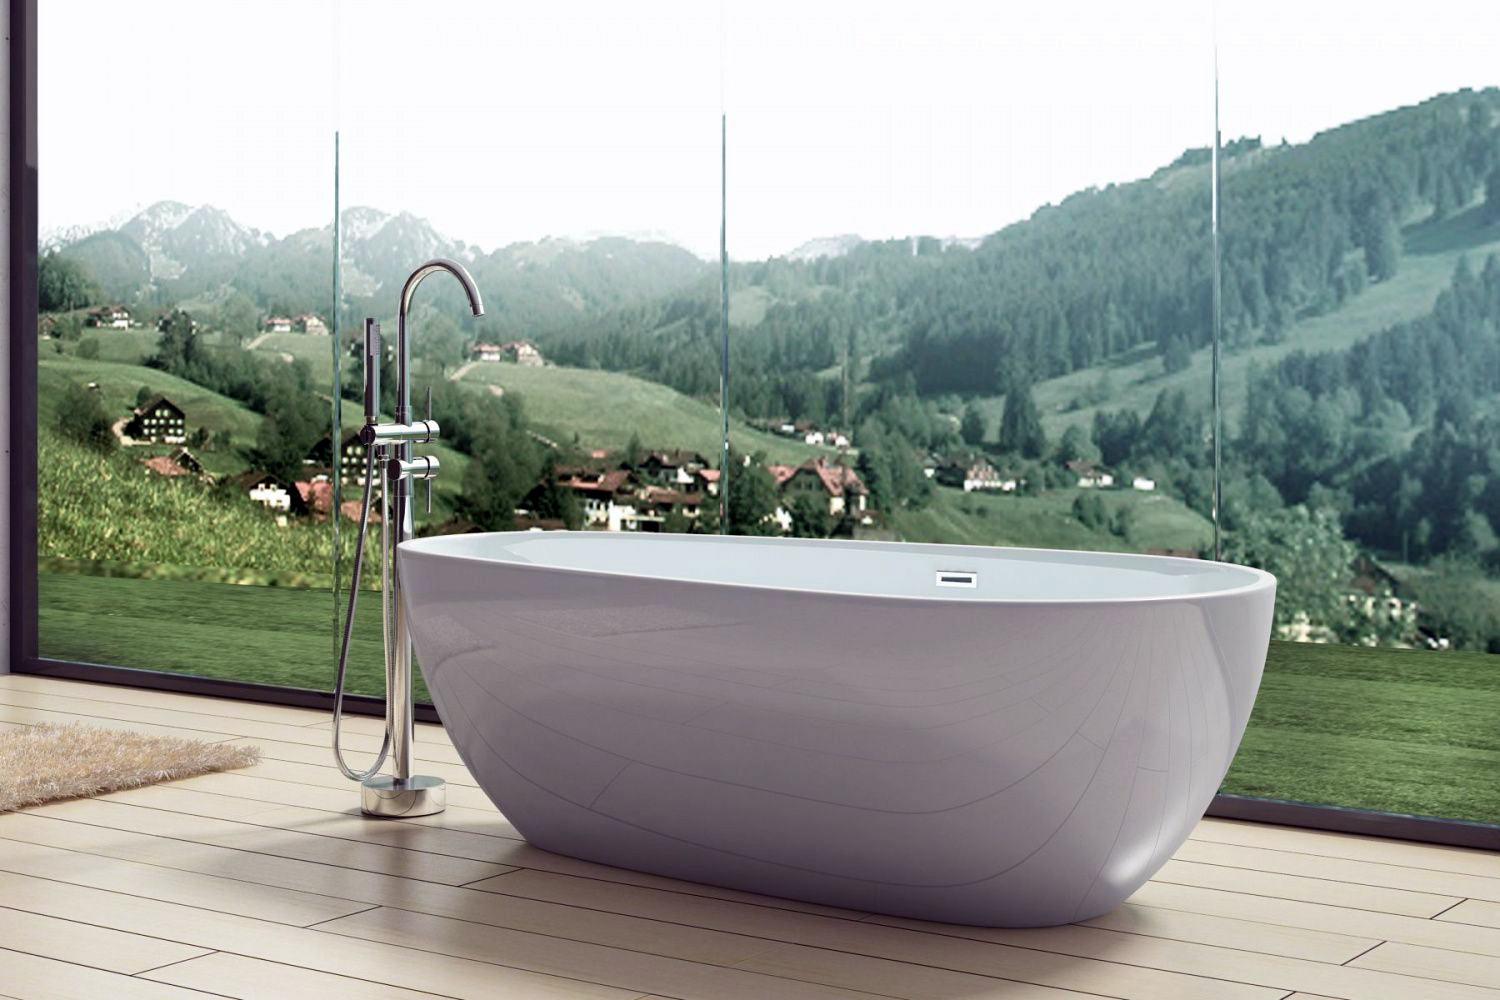 Акриловая ванна Art&Max 170х80 см AM-506-1670-845, белый